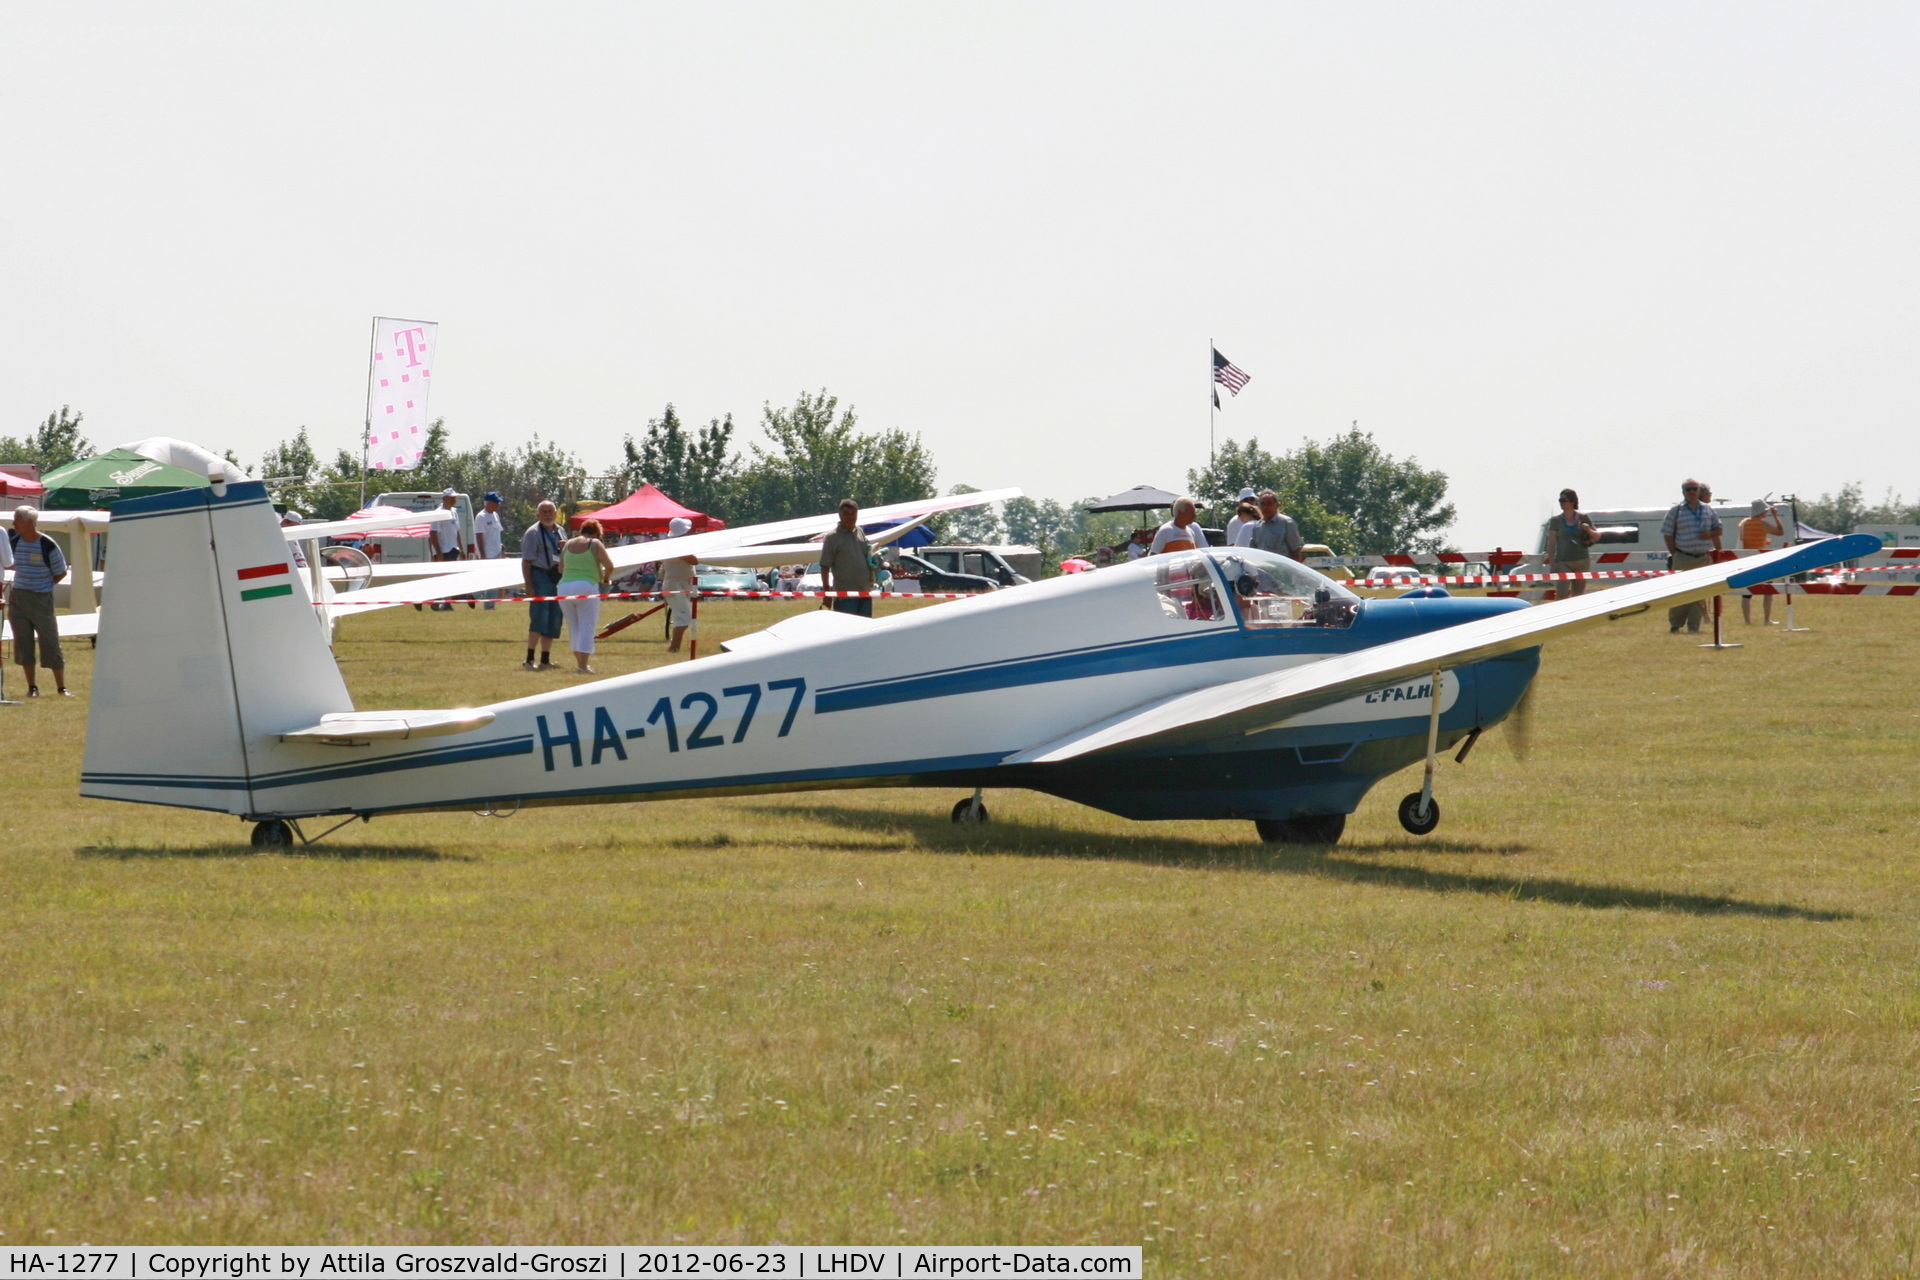 HA-1277, 1975 Scheibe SF-25C Falke 1700 C/N 4410, LHDV - Dunaújváros-Kisapostag Airport, Hungary AIRSHOW 2012